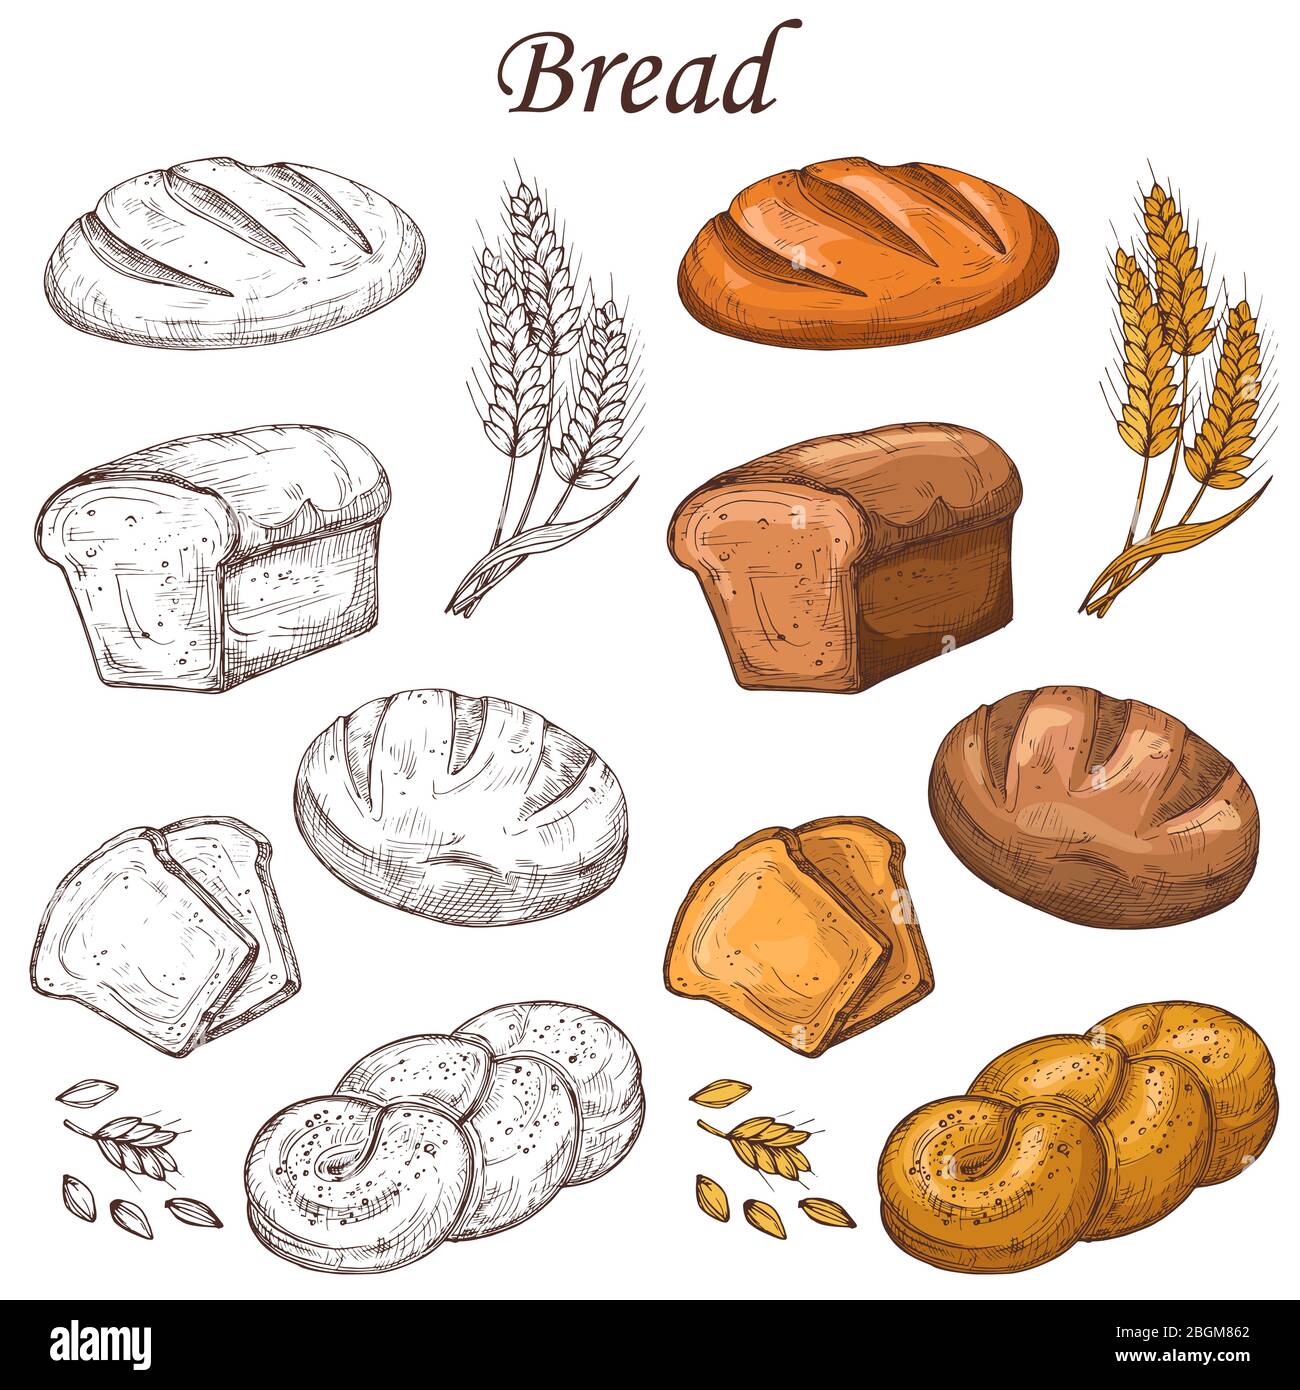 Linien- und farbige Vektorelemente für Bäckereien. Laib Brot isoliert auf weißem Hintergrund. Brot Brot zum Frühstück, frischen Snack backen Illustration Stock Vektor